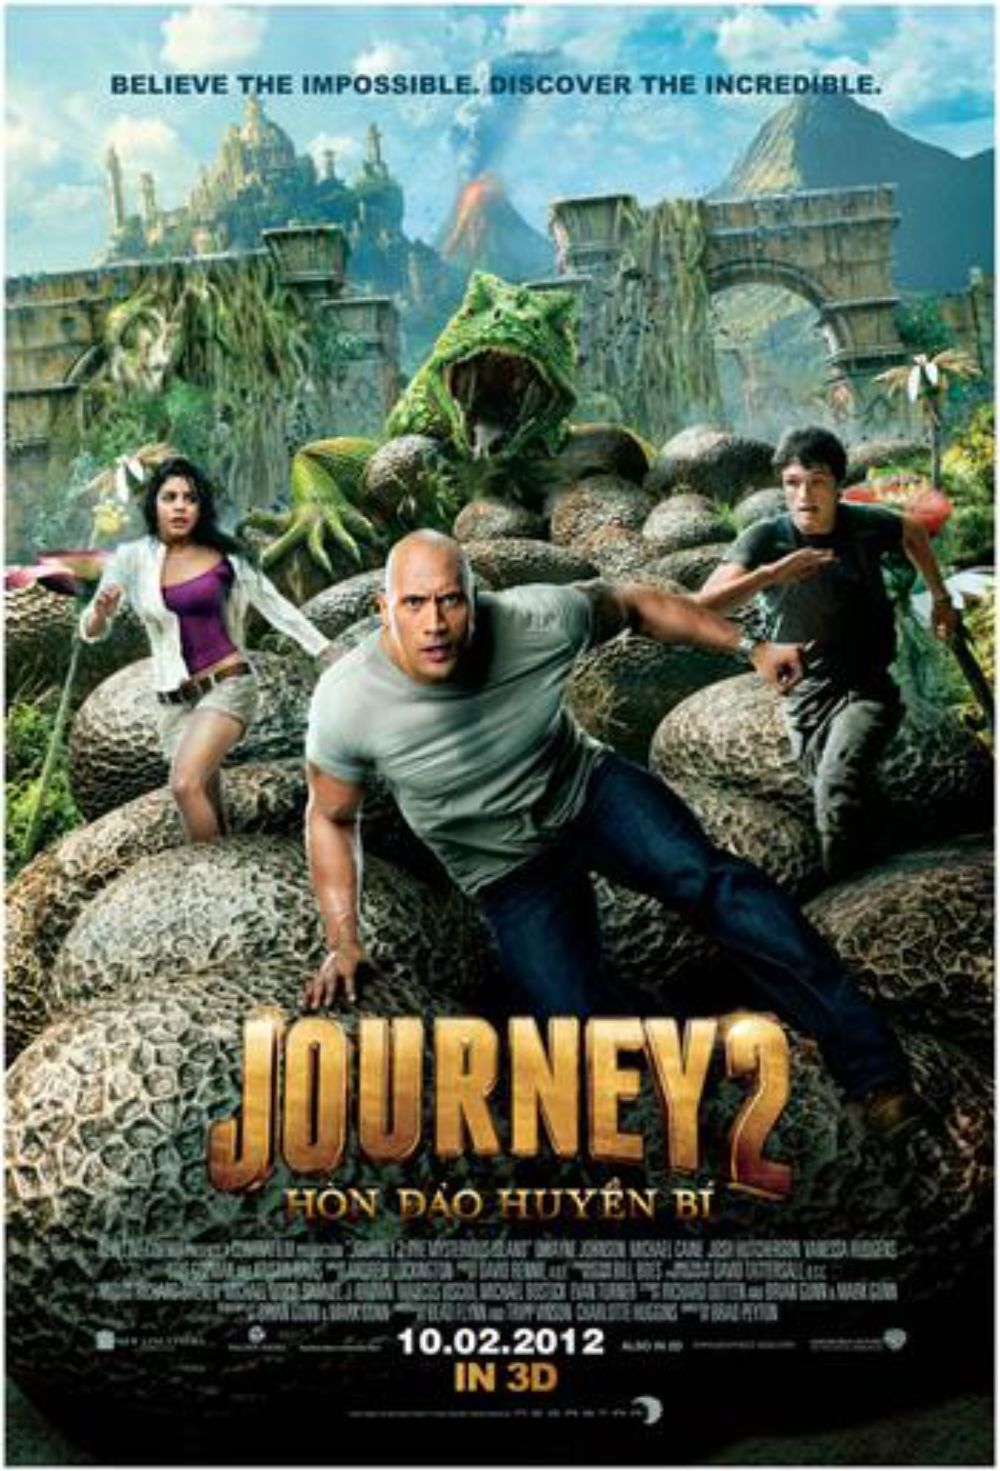 Journey 2: The Mysterious Island có màu sắc tươi sáng, rực rỡ, phù hợp với thể loại phim phiêu lưu, viễn tưởng